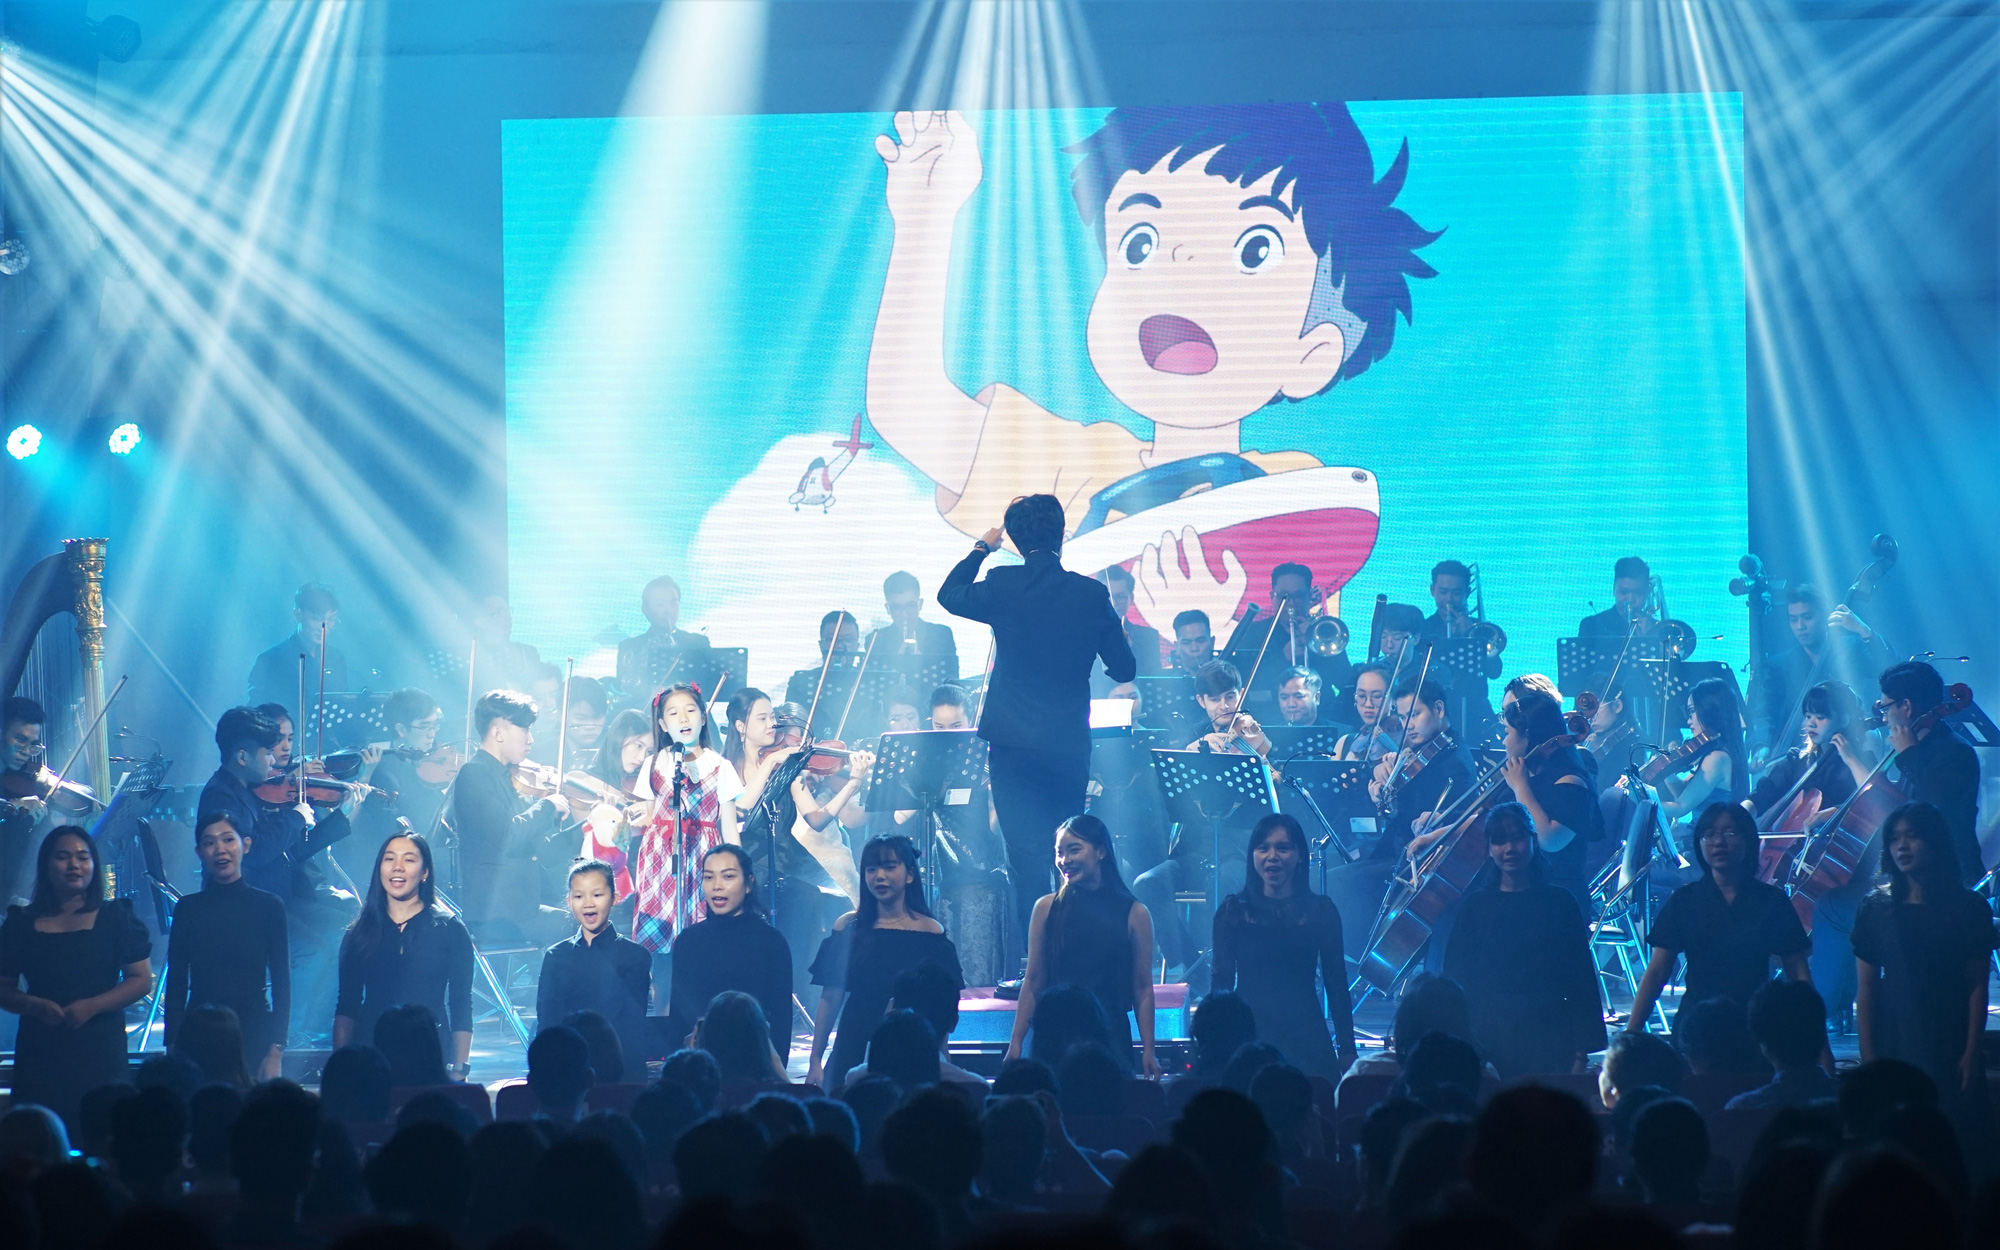 Háo hức với concert nhạc phim hoạt hình Ghibli